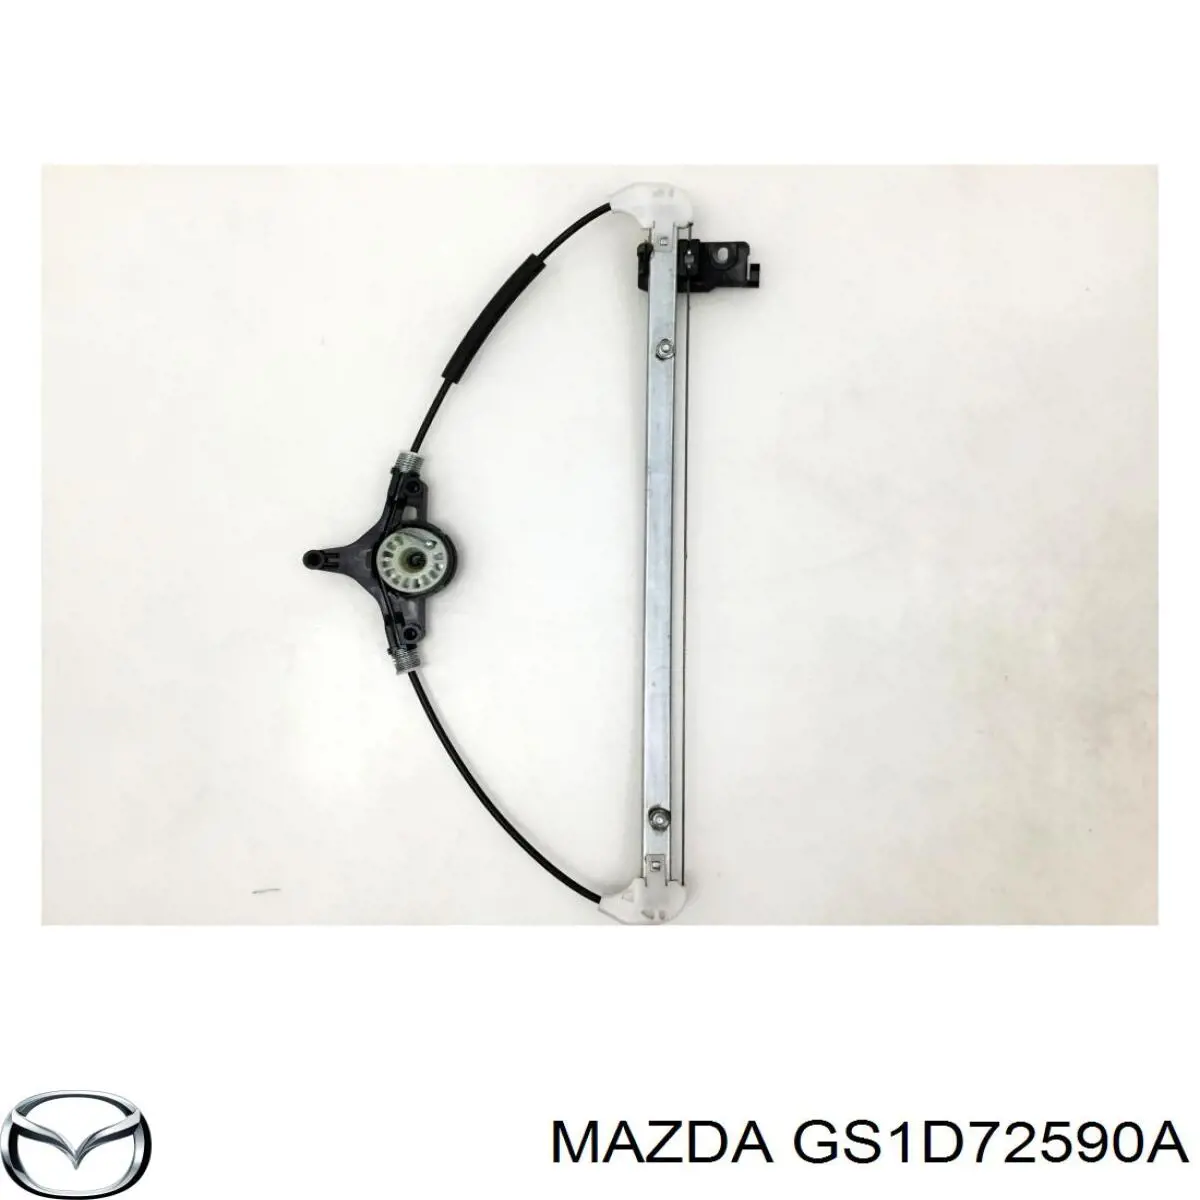 GS1D72590A Mazda mecanismo de acionamento de vidro da porta traseira direita